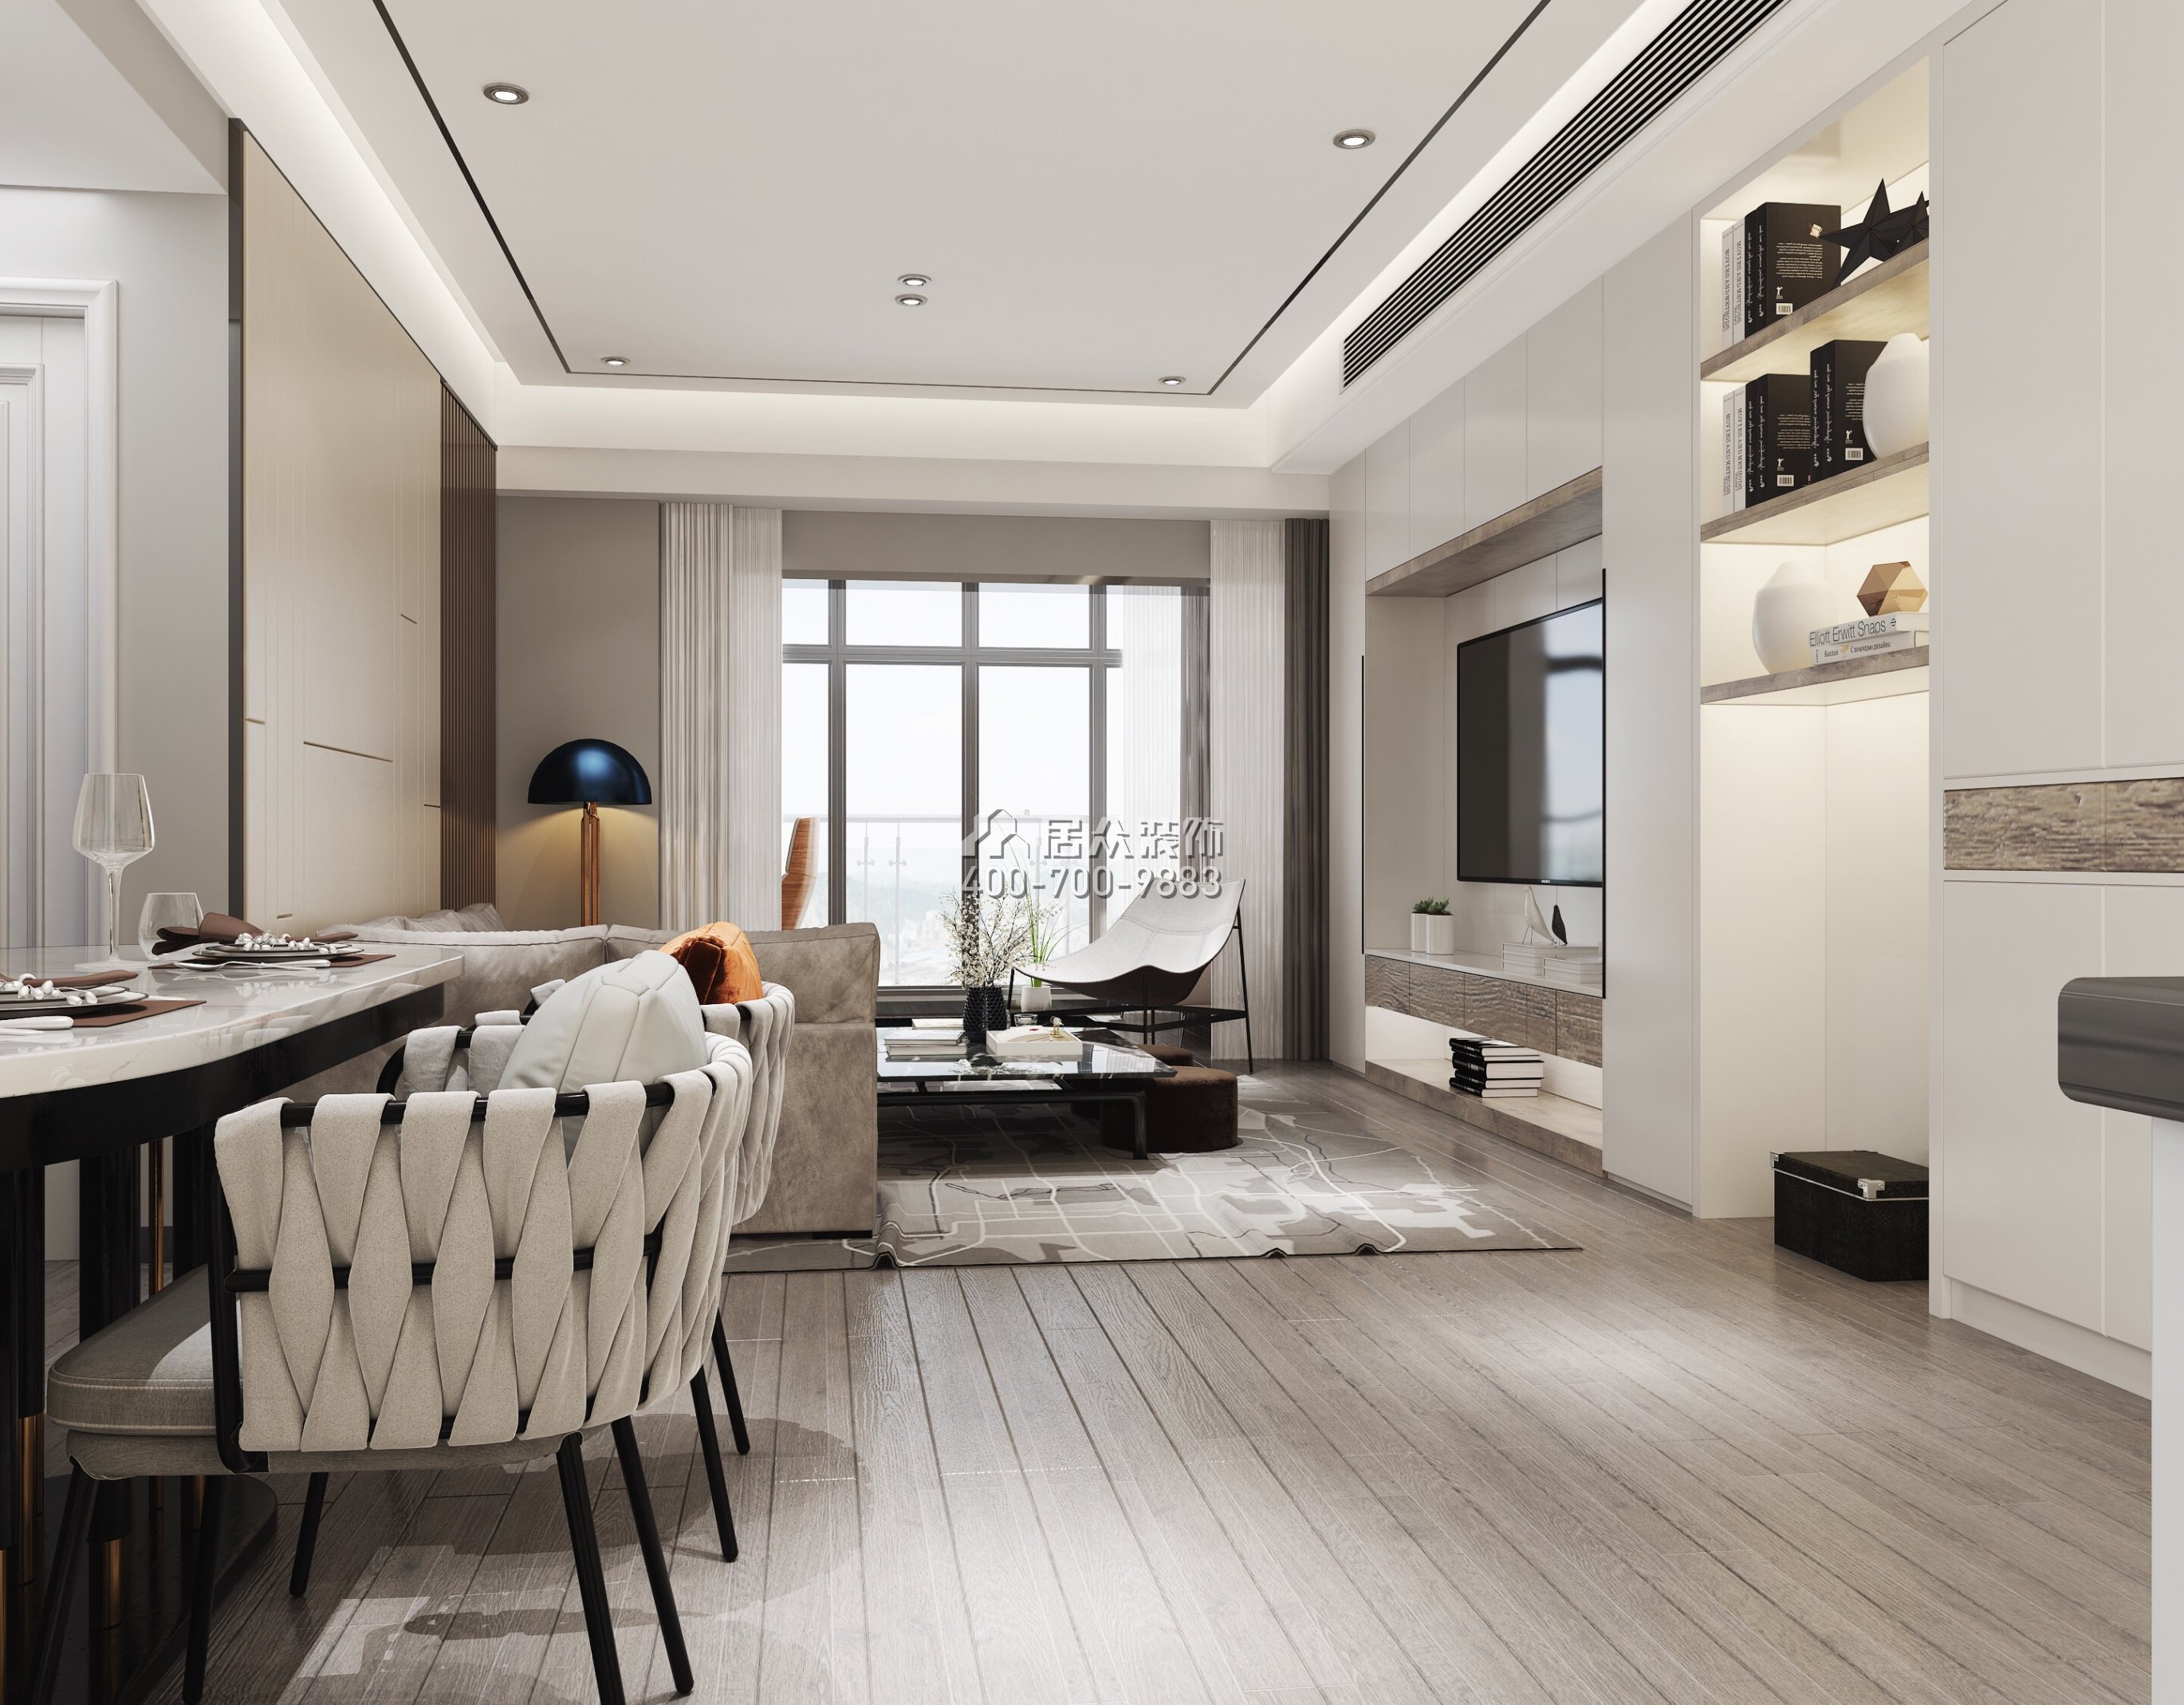 碧海君庭88平方米現代簡約風格平層戶型客廳裝修效果圖